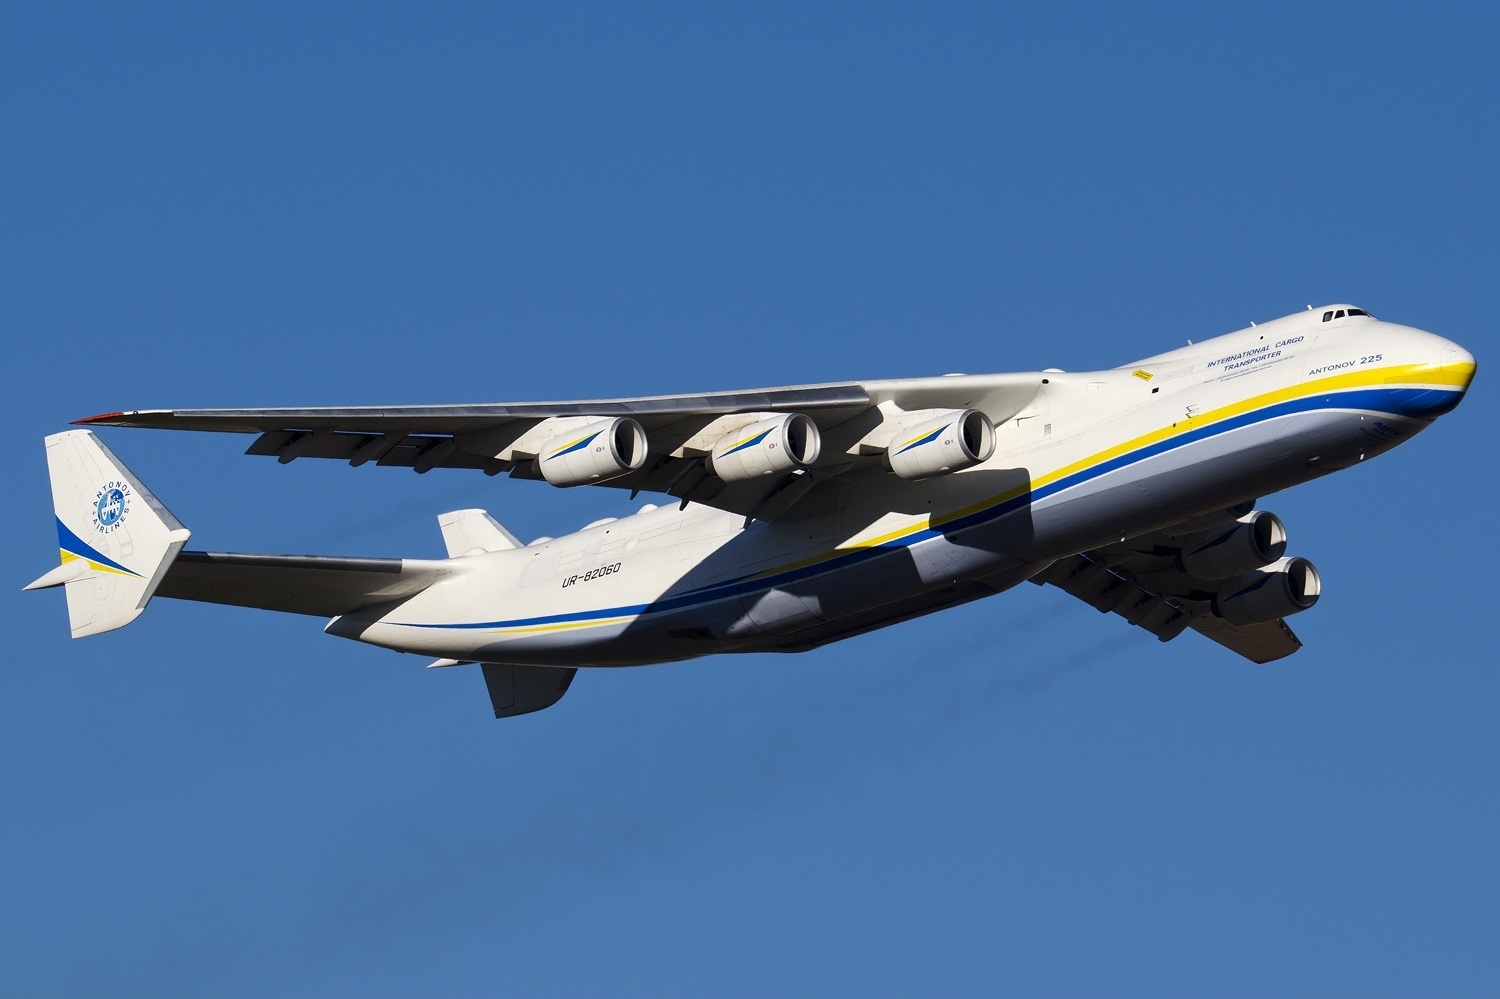 An-225 Mriya nyob saum ntuj ceeb tsheej ntawm Madrid